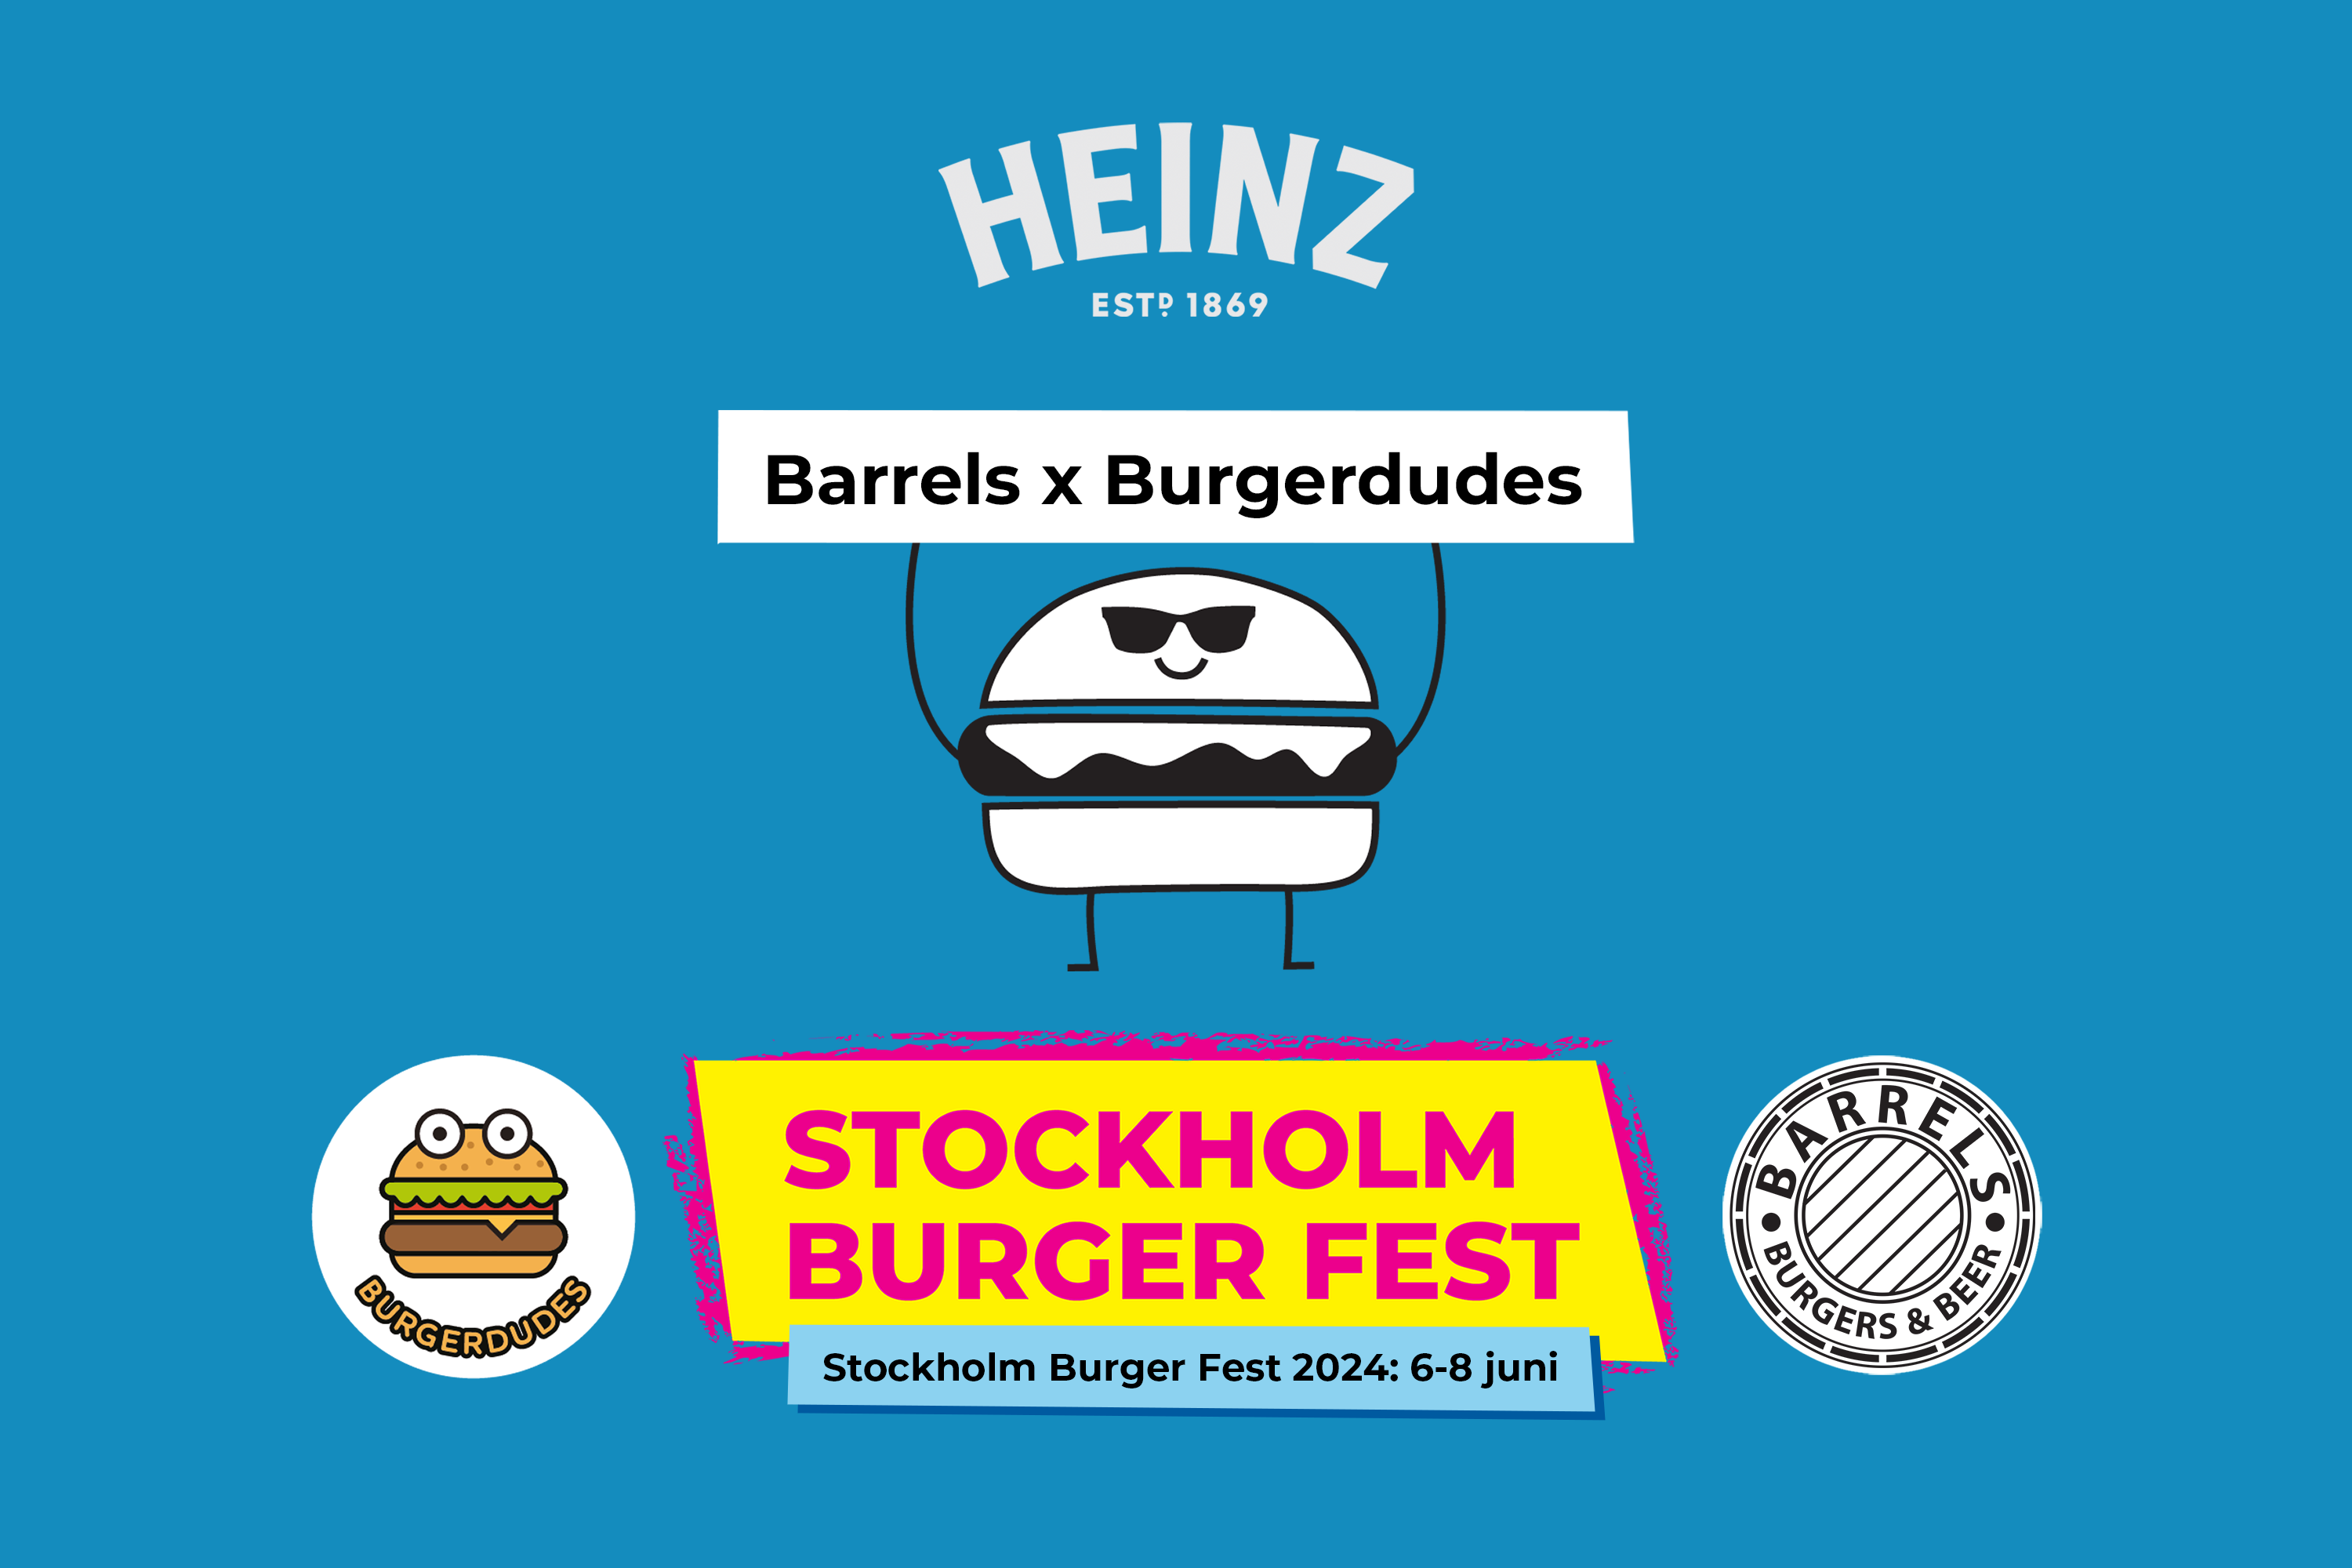 Stockholm Burger Fest 2024: Barrels x Burgerdudes